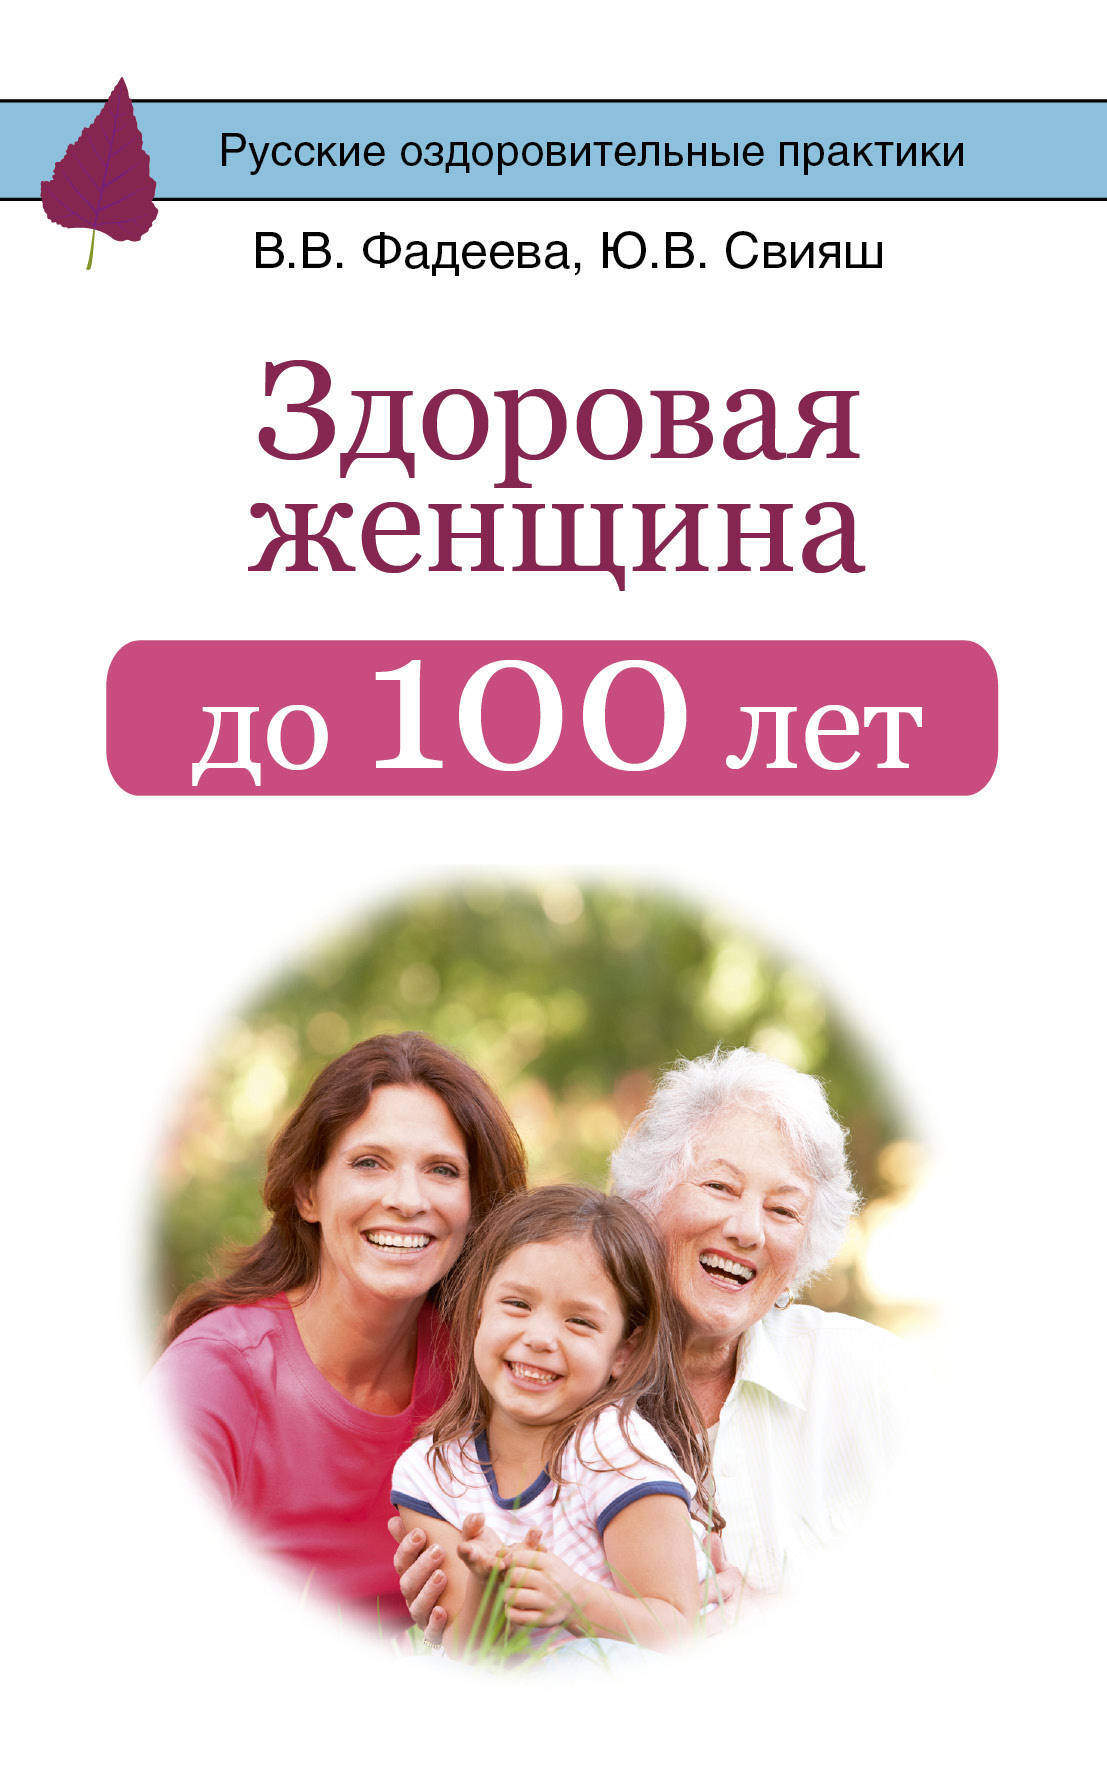 Здоровая женщина до 100 лет | Фадеева Валерия Вячеславовна, Свияш Юлия Викторовна